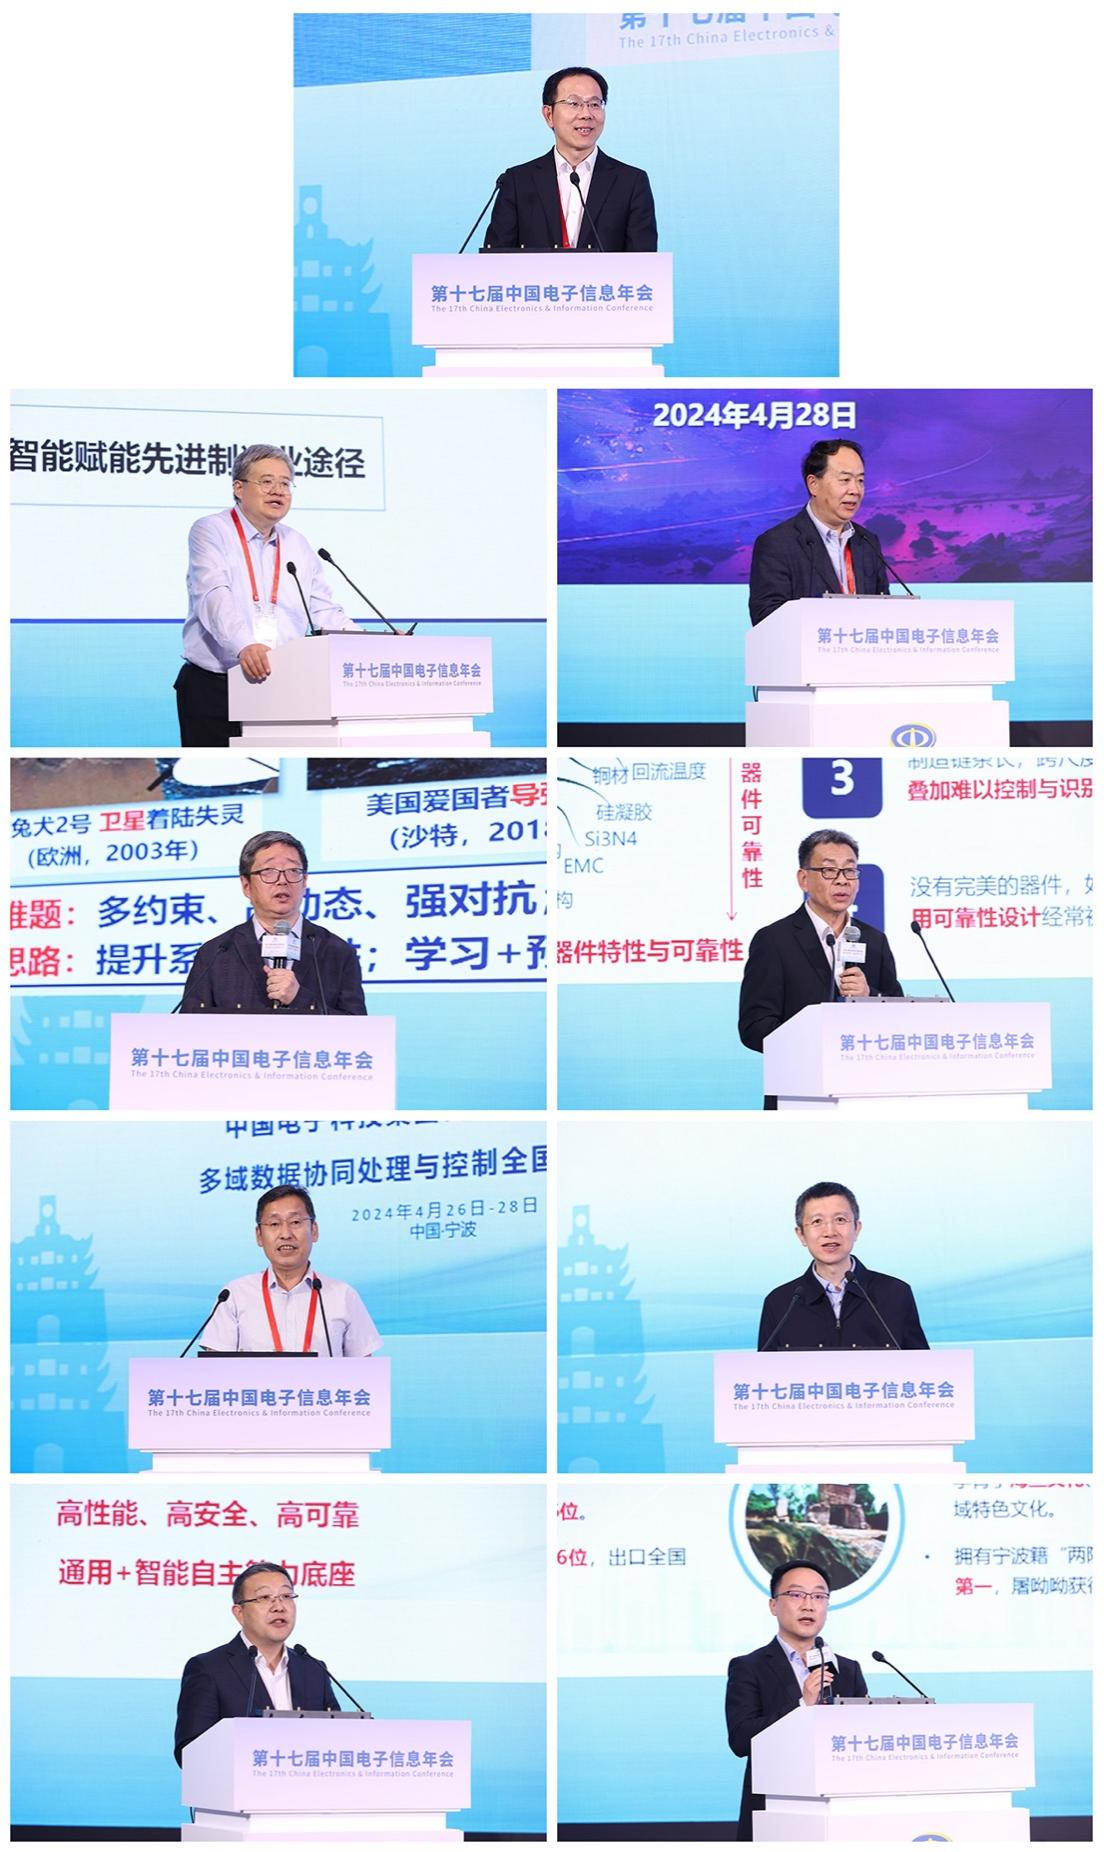 助力电子信息产业高质量发展 第十七届中国电子信息年会在宁波召开